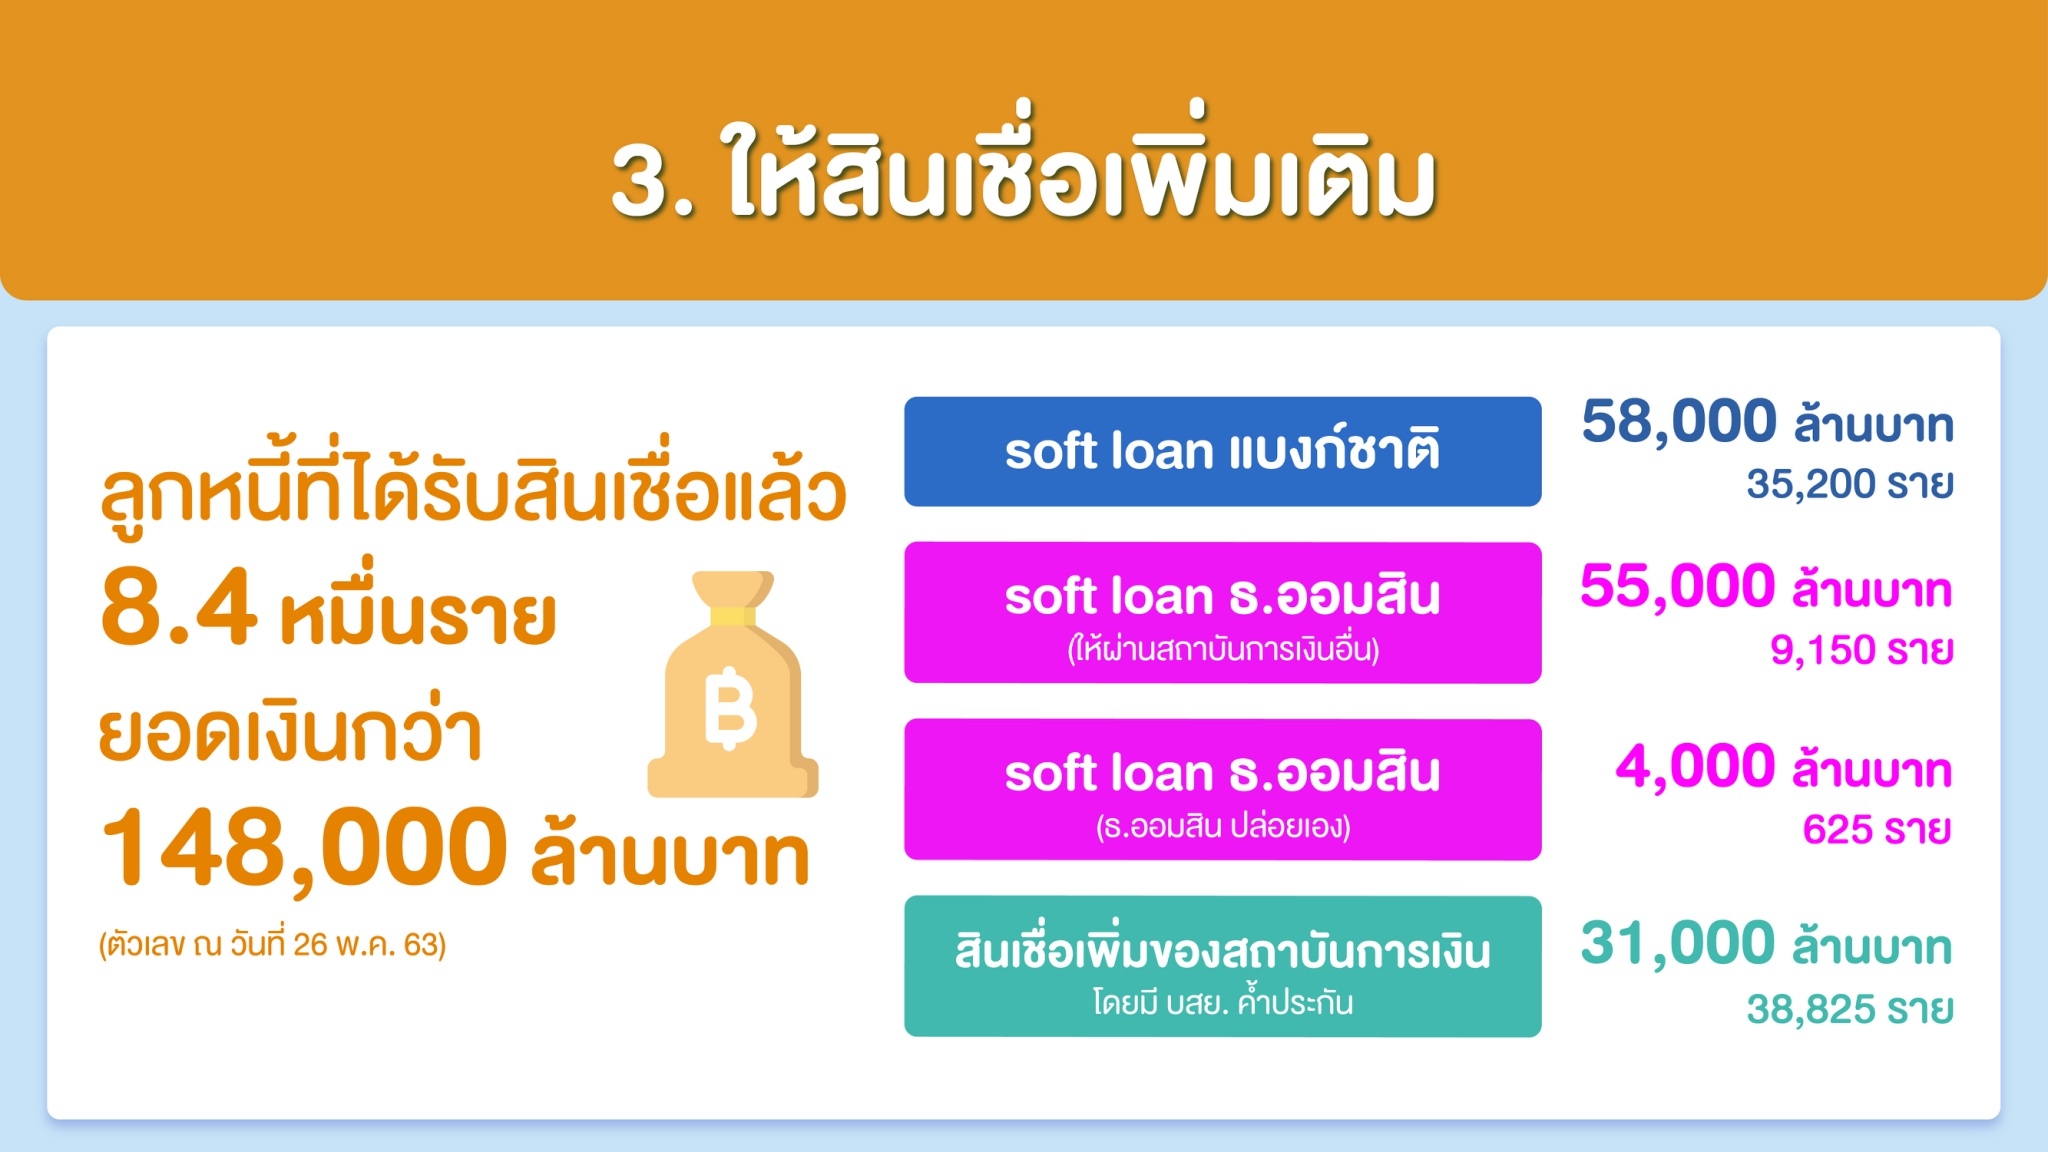 Info Soft loan ๒๐๐๕๒๘ 0007